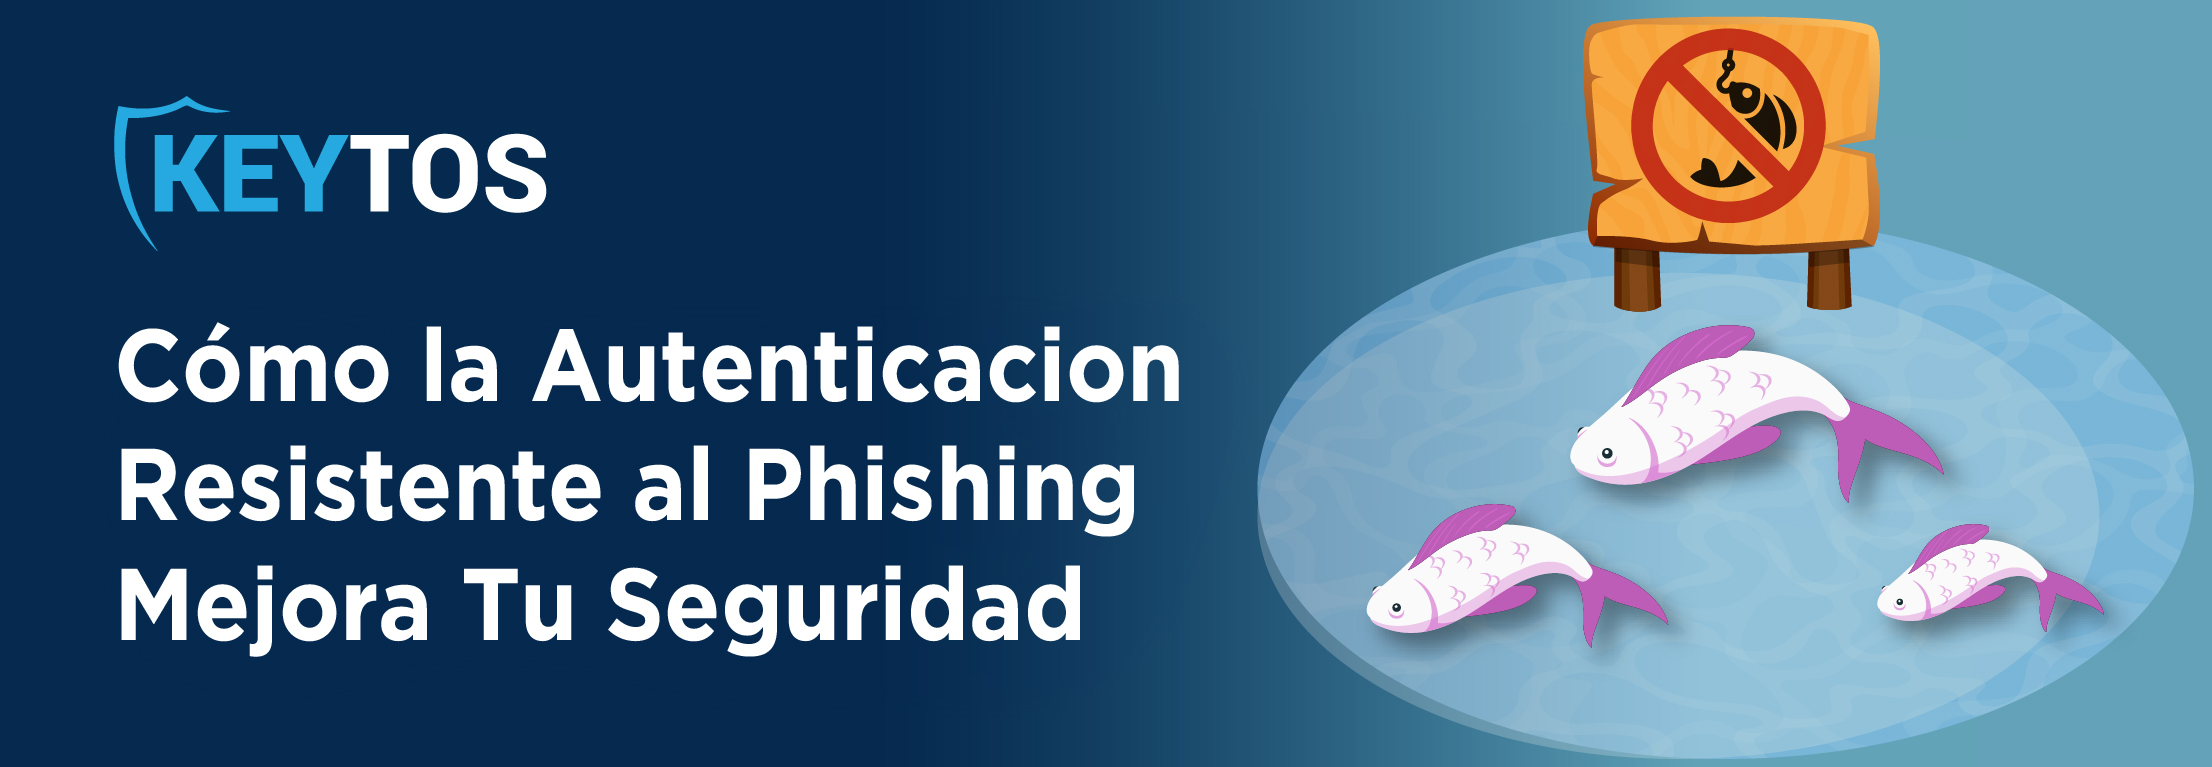 Cómo la autenticación resistente al phishing mejora tu seguridad